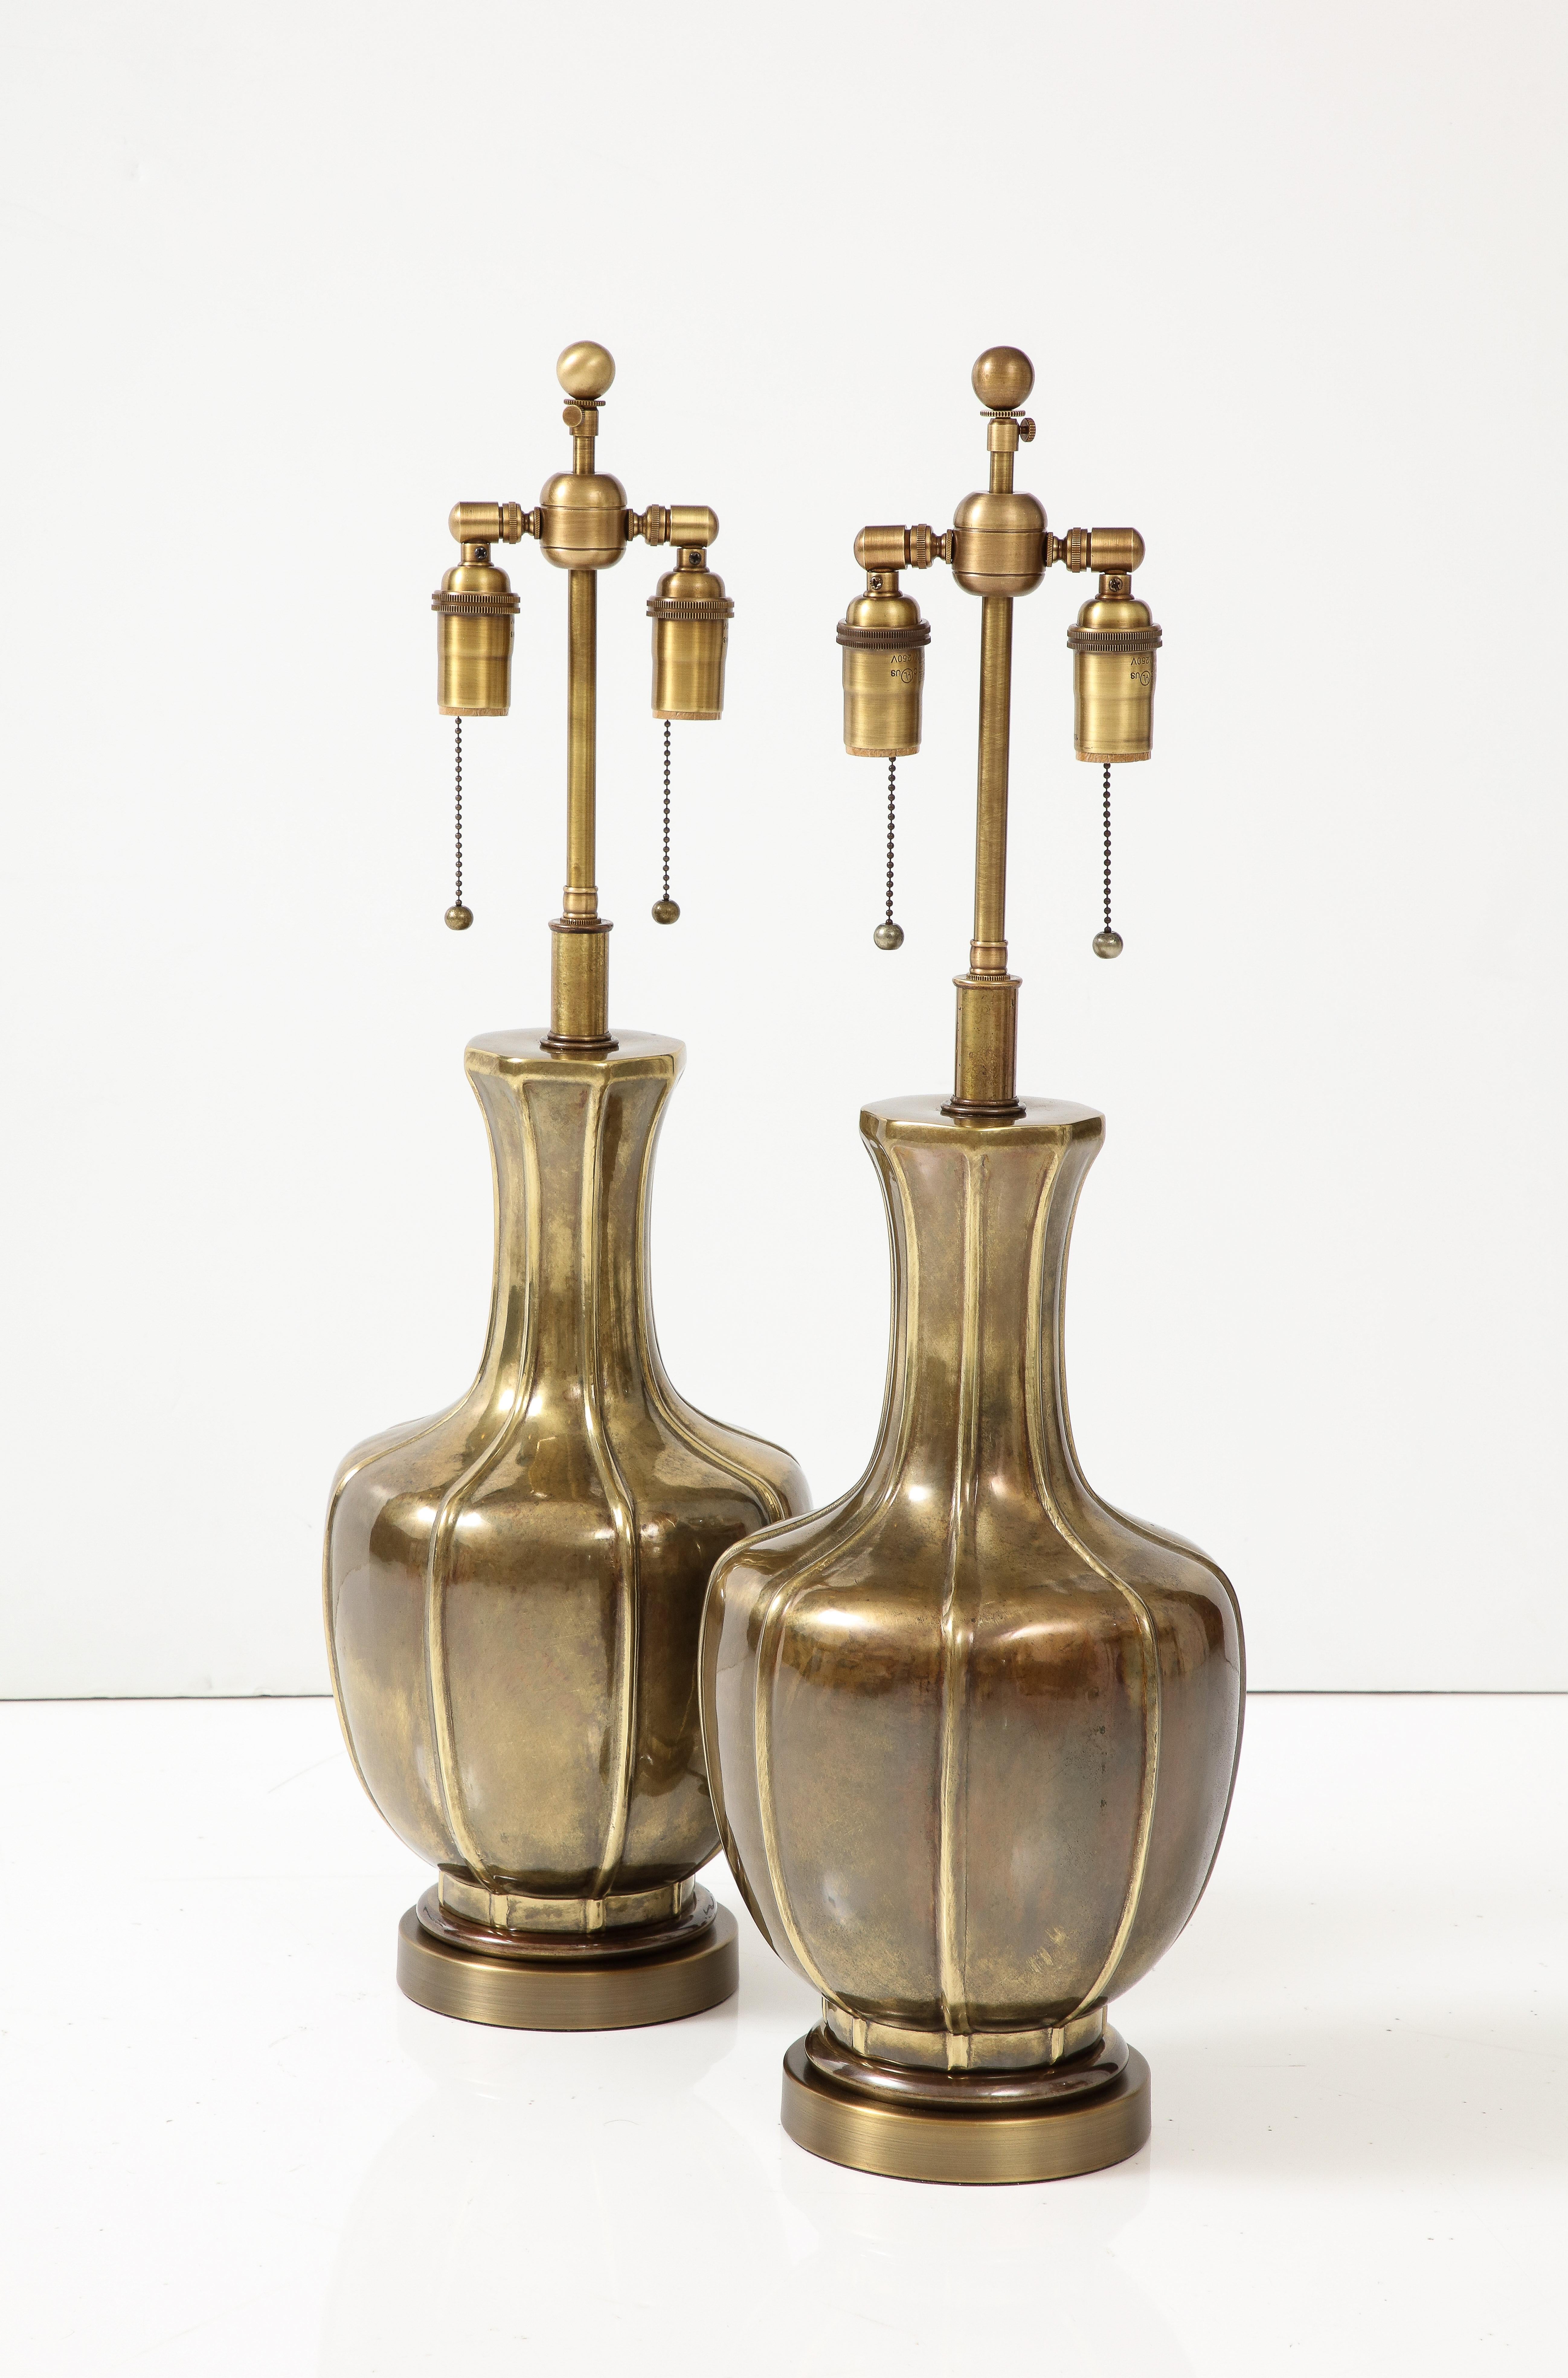 Paire de lampes des années 1960 d'influence Arts and Crafts par Frederick Cooper.
Les lampes ont une magnifique finition en laiton vieilli et ont été recâblées avec des fils de cuivre. 
doubles grappes réglables en laiton antique pouvant accueillir